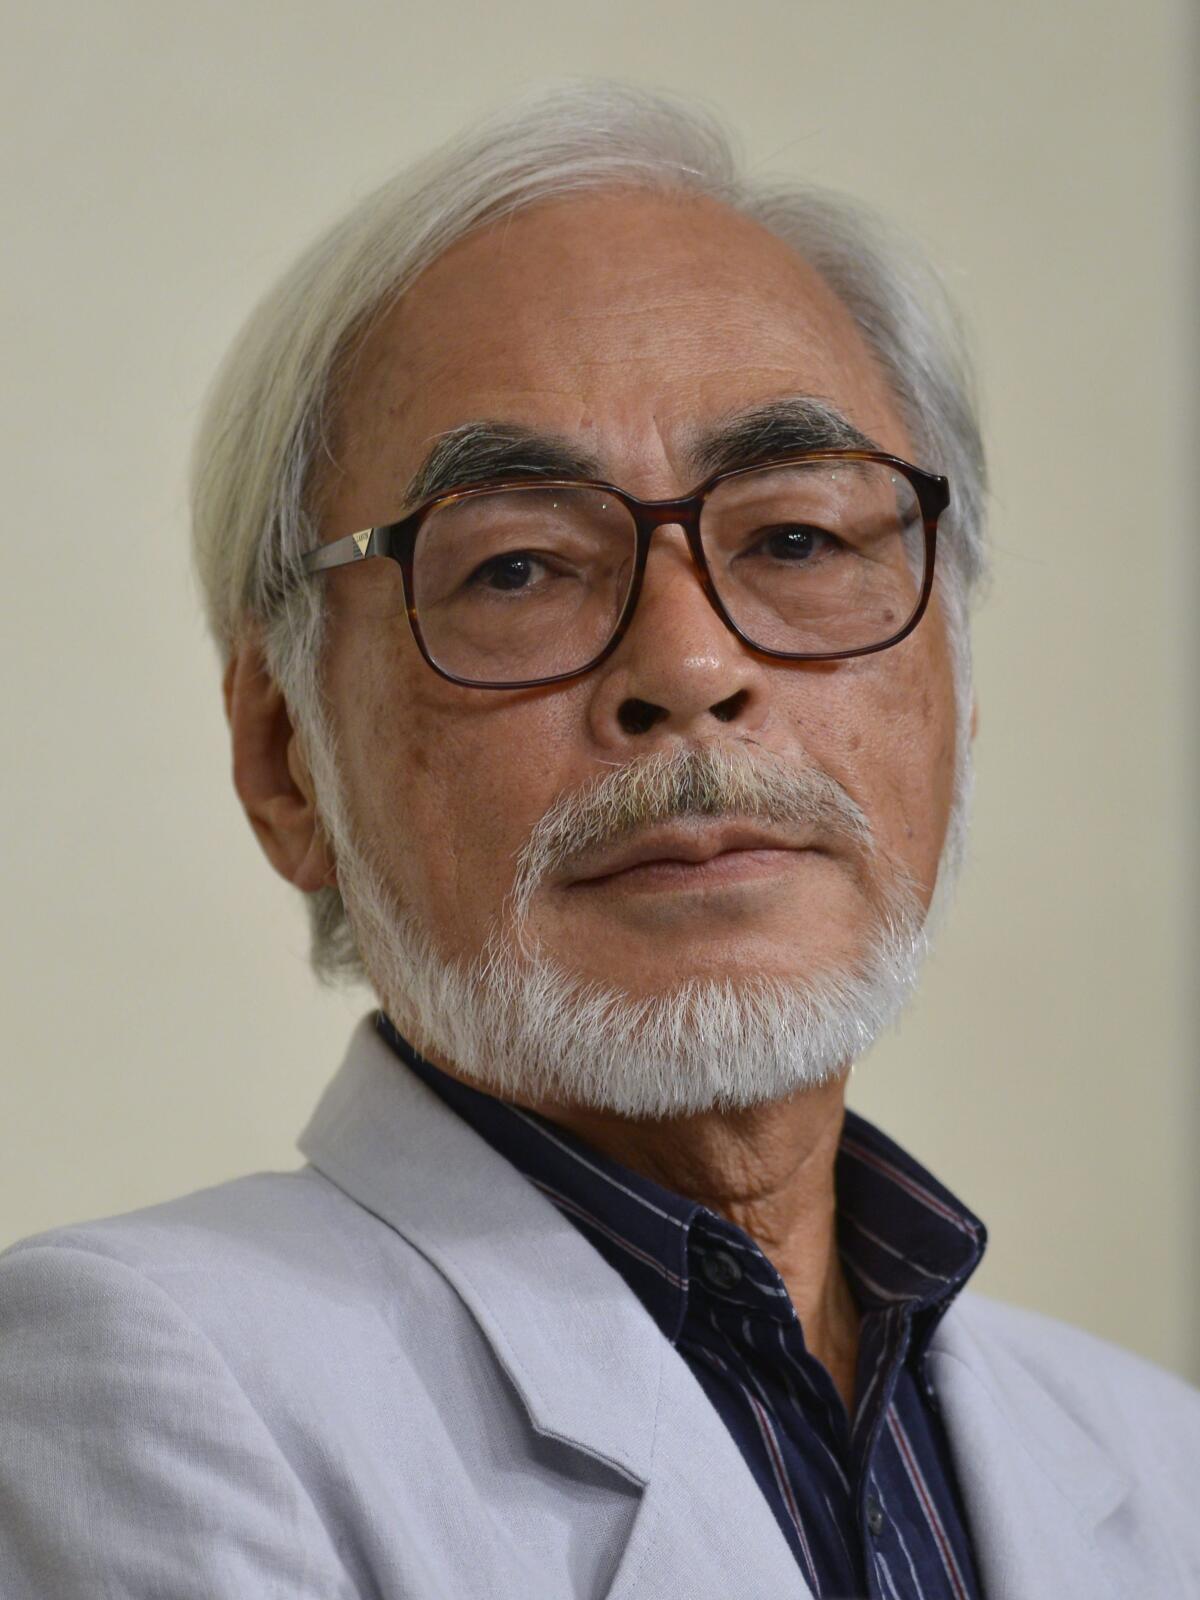 La nueva película del director Hayao Miyazaki se estrenará en julio de 2023  - San Diego Union-Tribune en Español